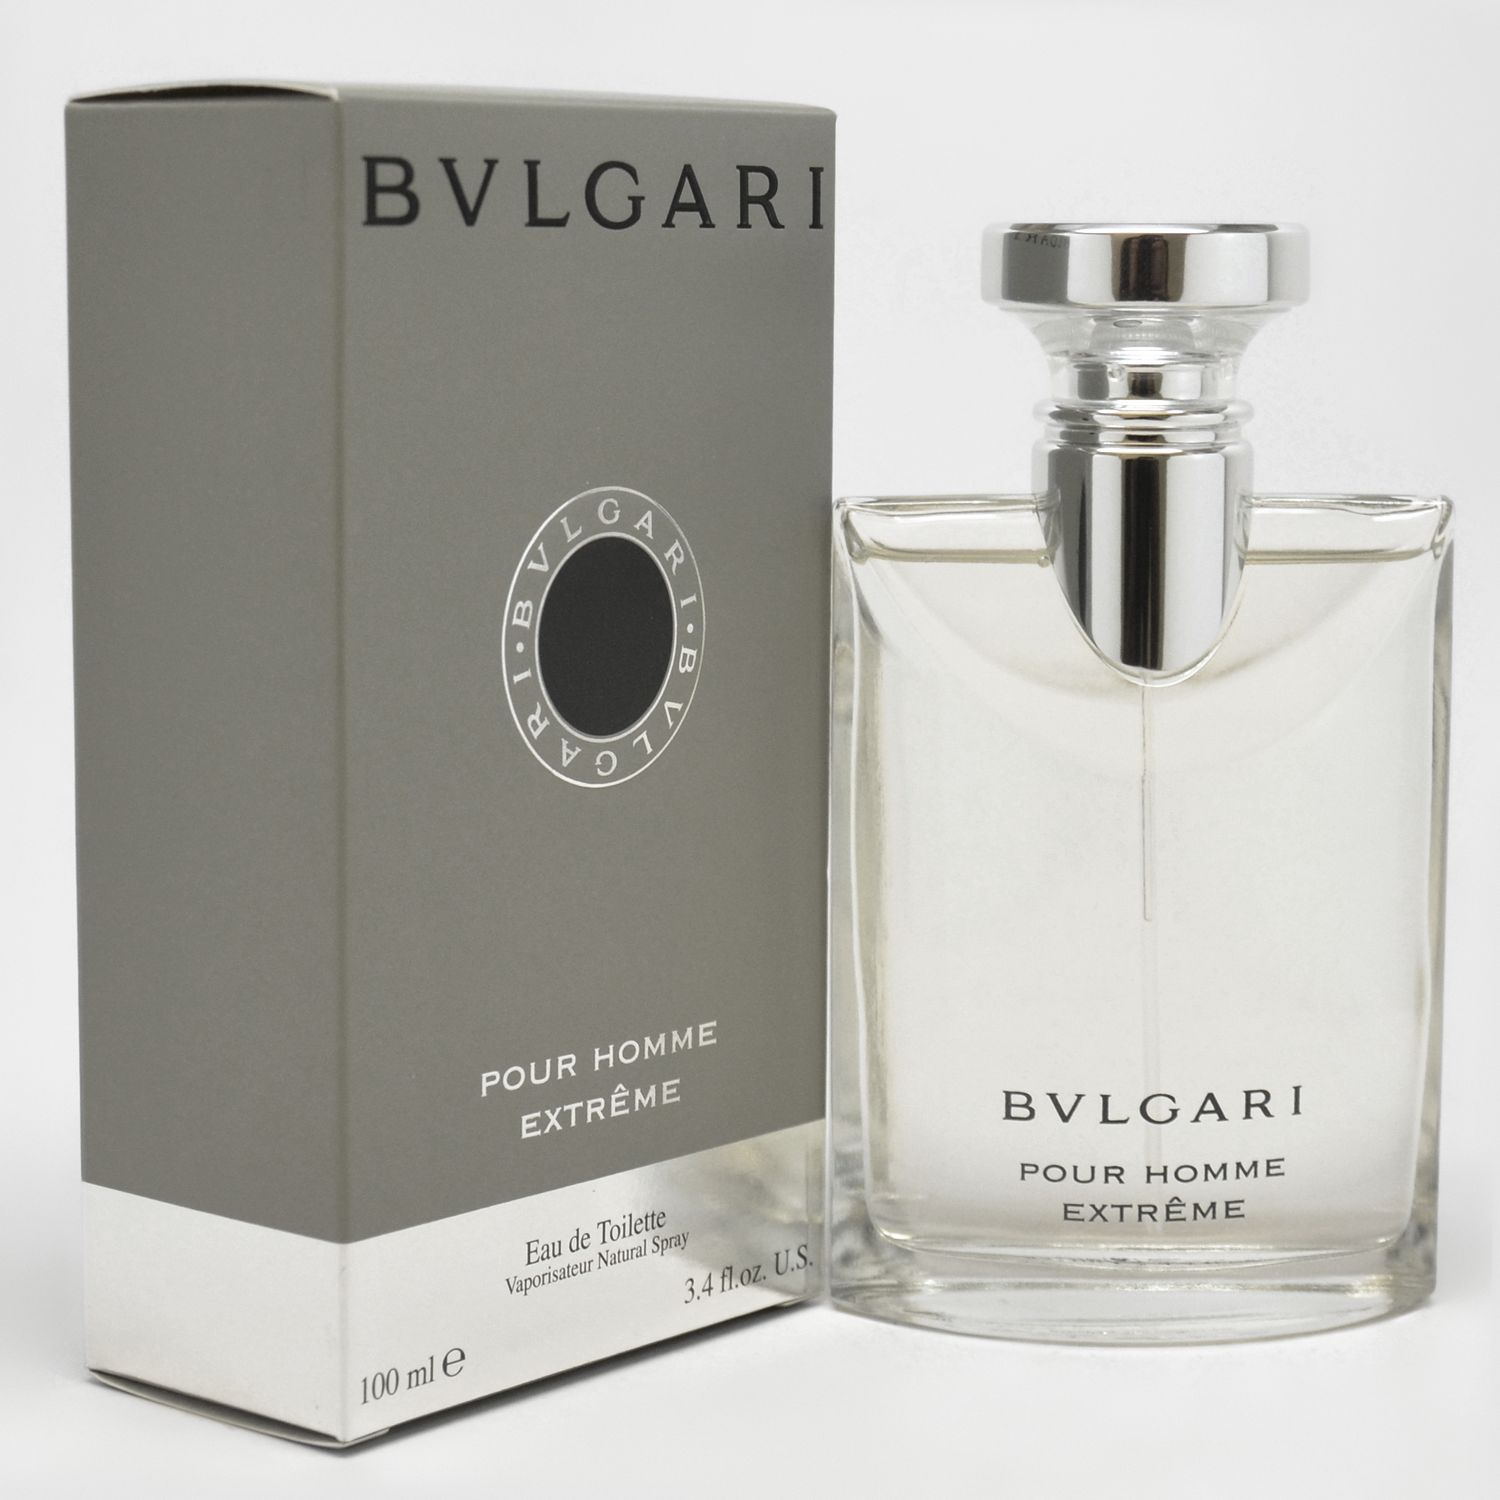 bvlgari parfum extreme